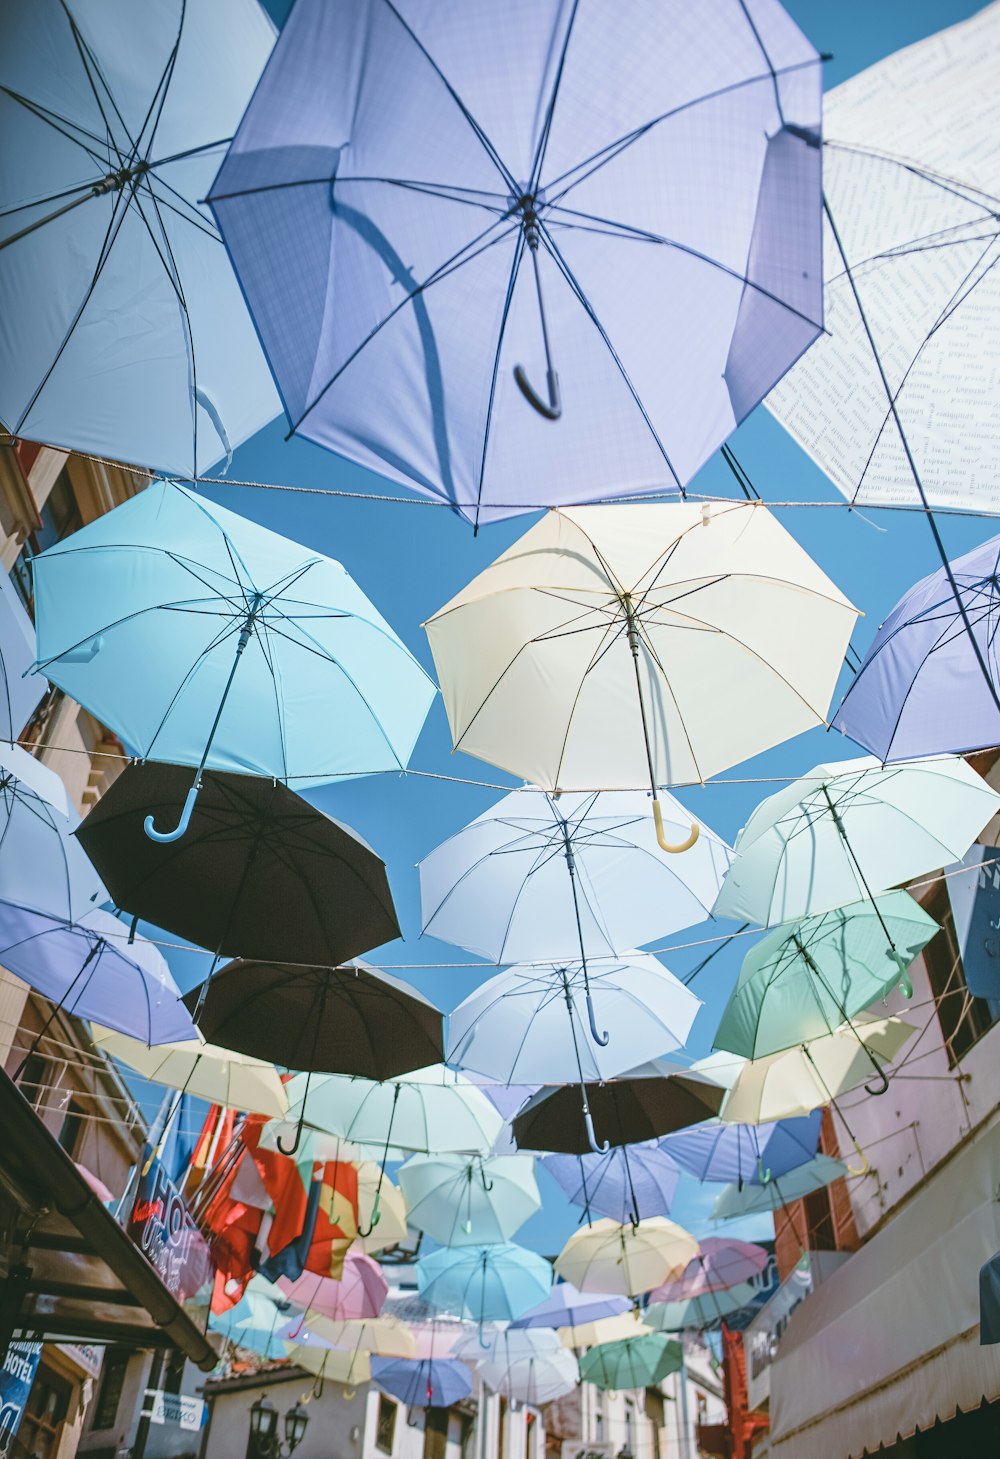 Paraguas de colores variados colgados de cables bajo el cielo azul durante el día